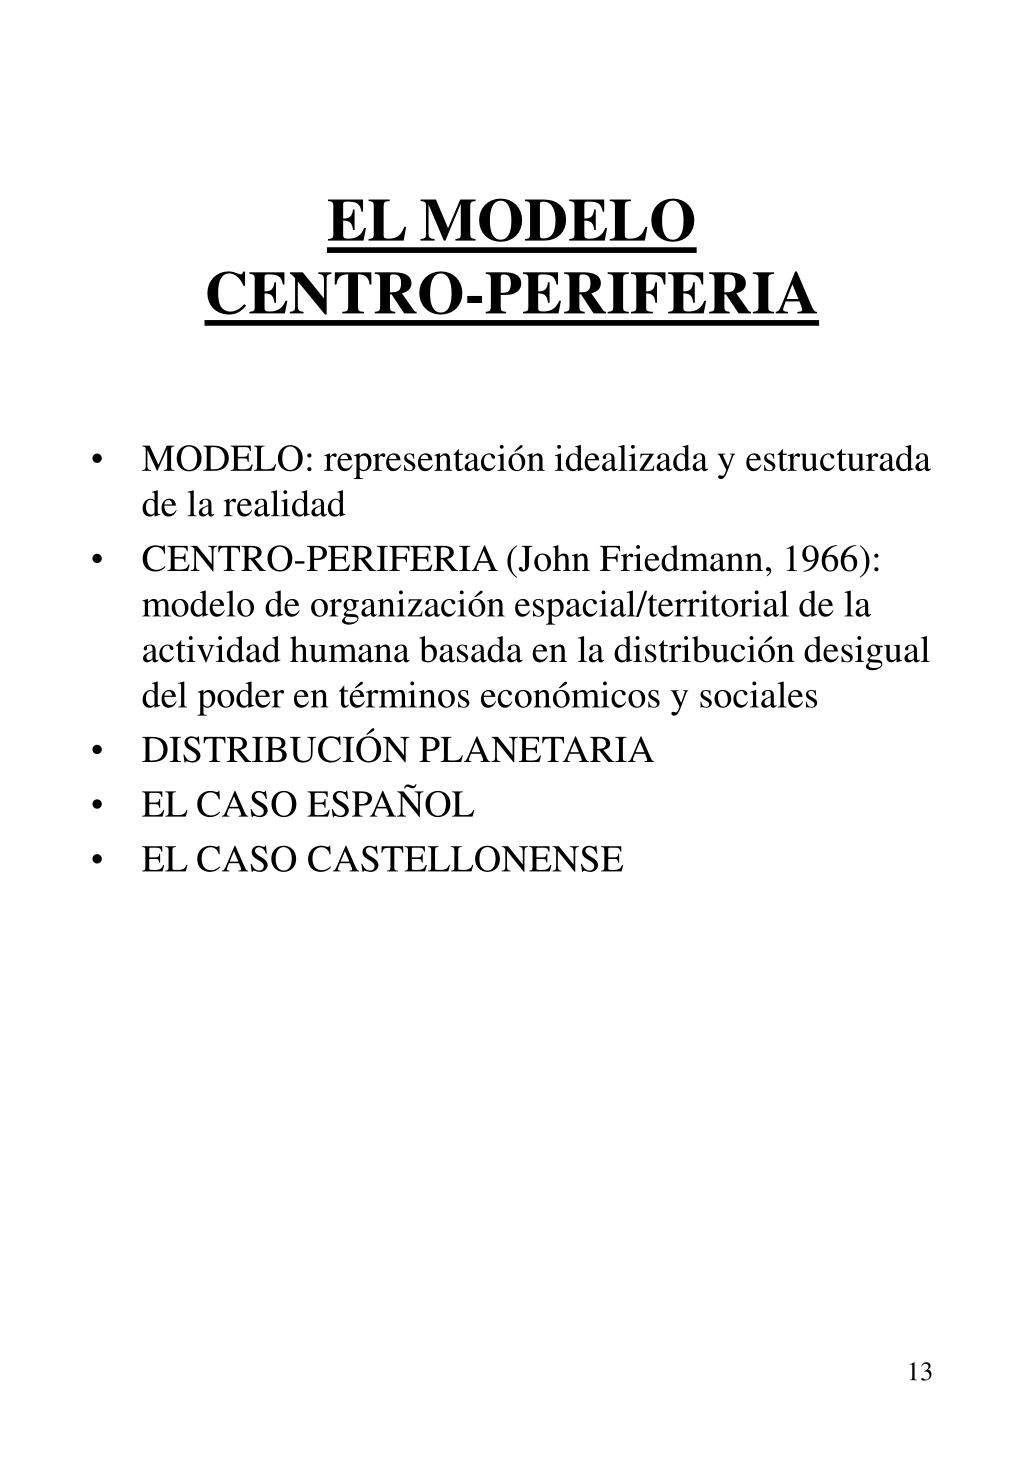 PPT - TEMA 1: SOCIEDAD Y TERRITORIO PowerPoint Presentation, free download  - ID:186808